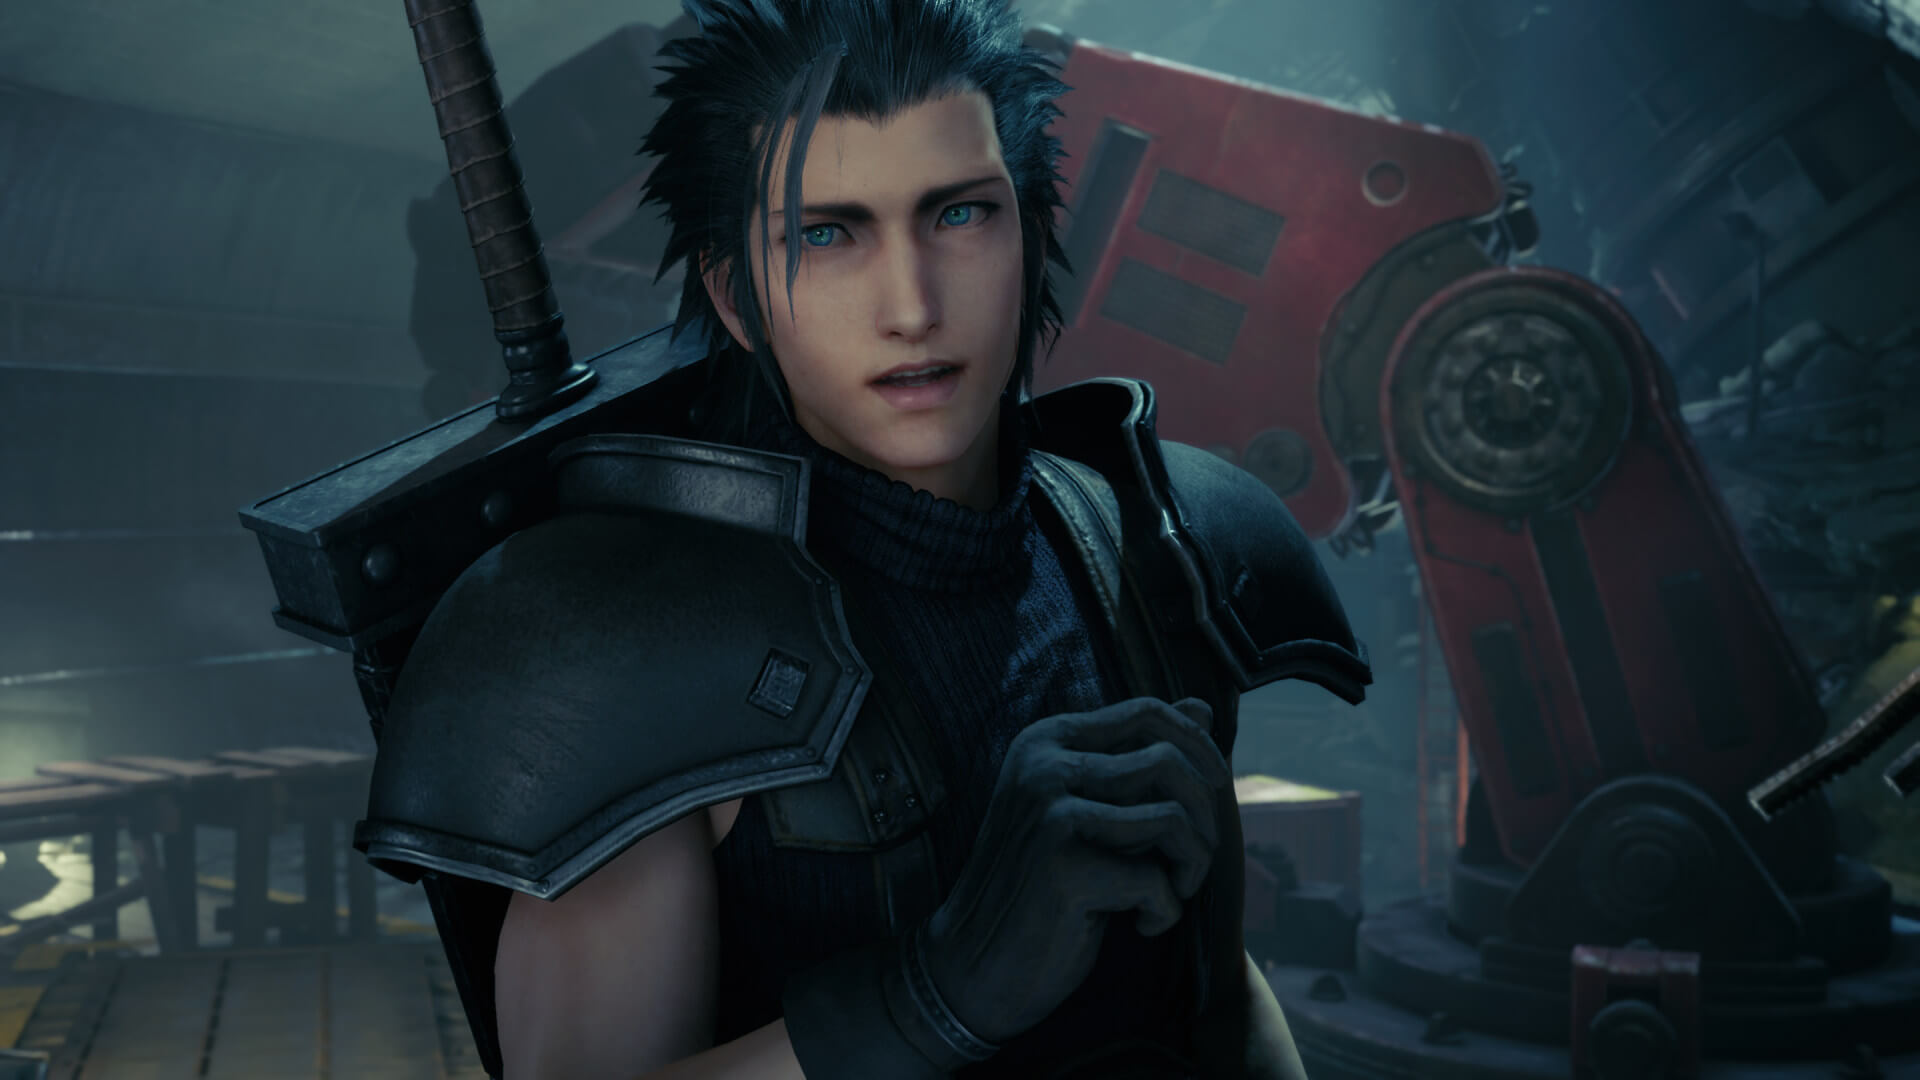 Final Fantasy 7 Remake Mod allows you to play as Zack Fair